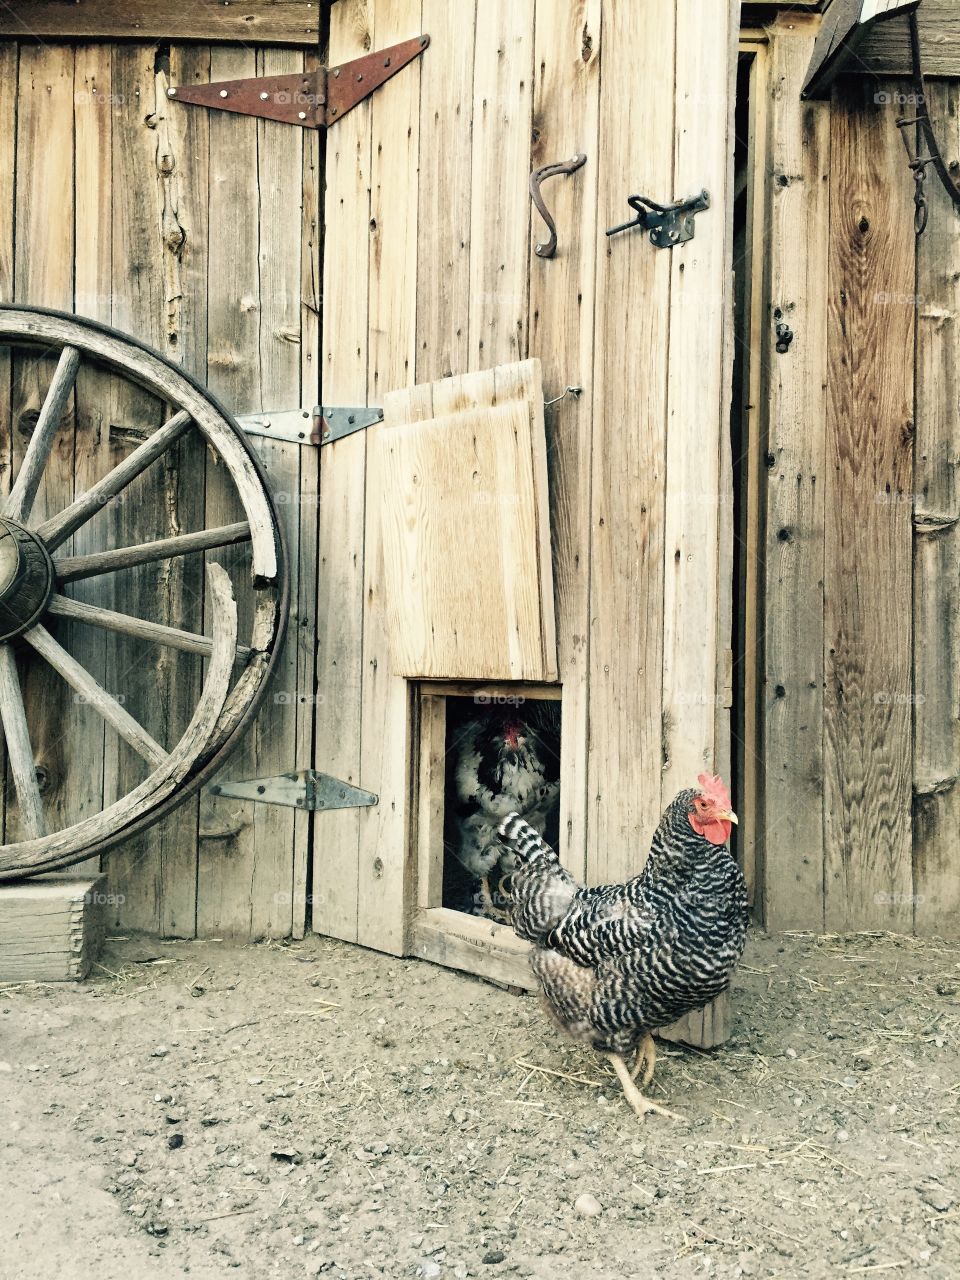 Chicken in a barnyard. A chicken in a barnyard with an old barn